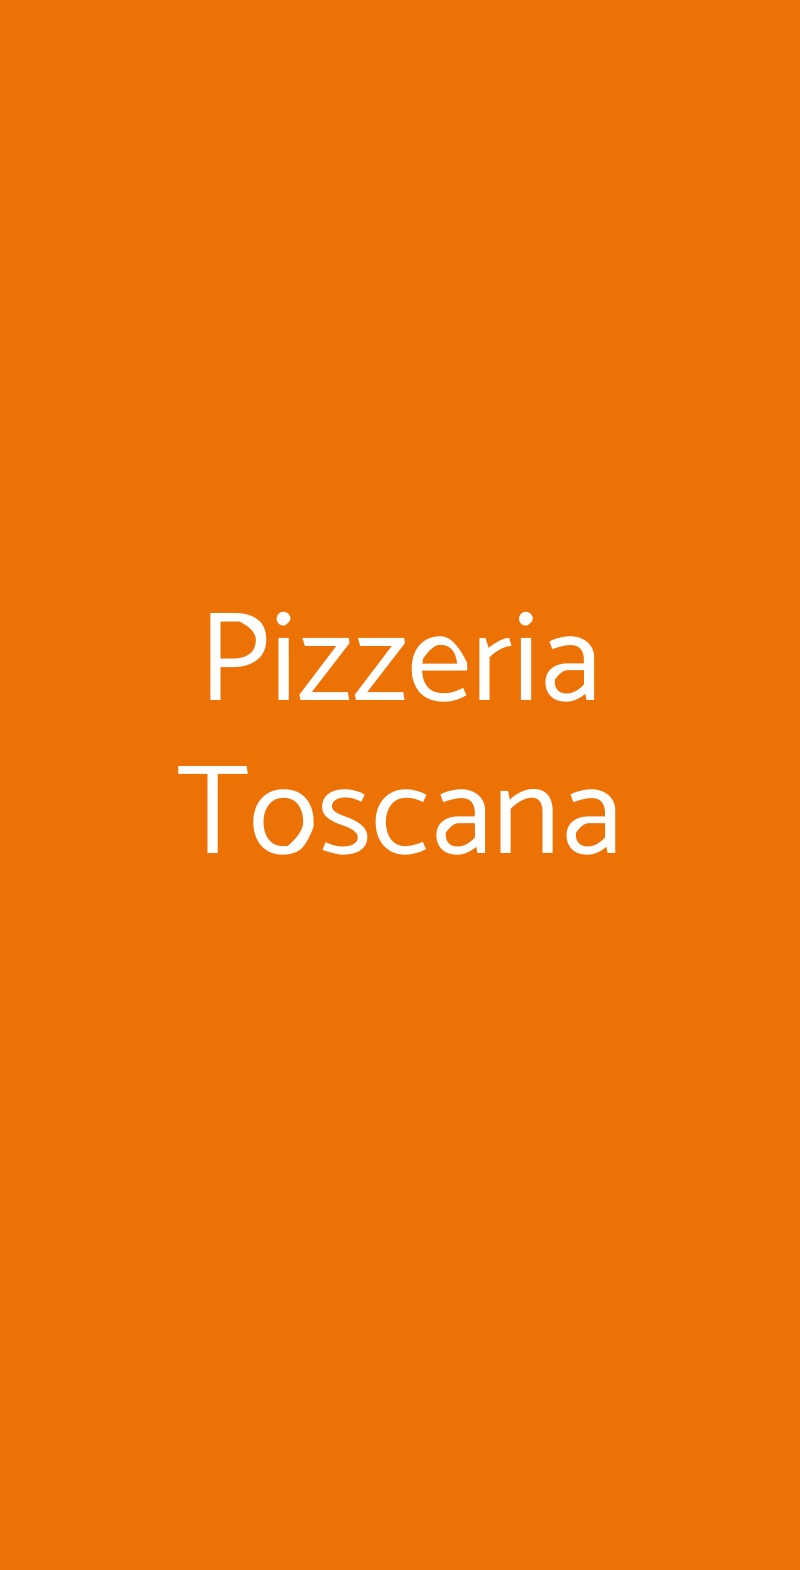 Pizzeria Toscana Milano menù 1 pagina